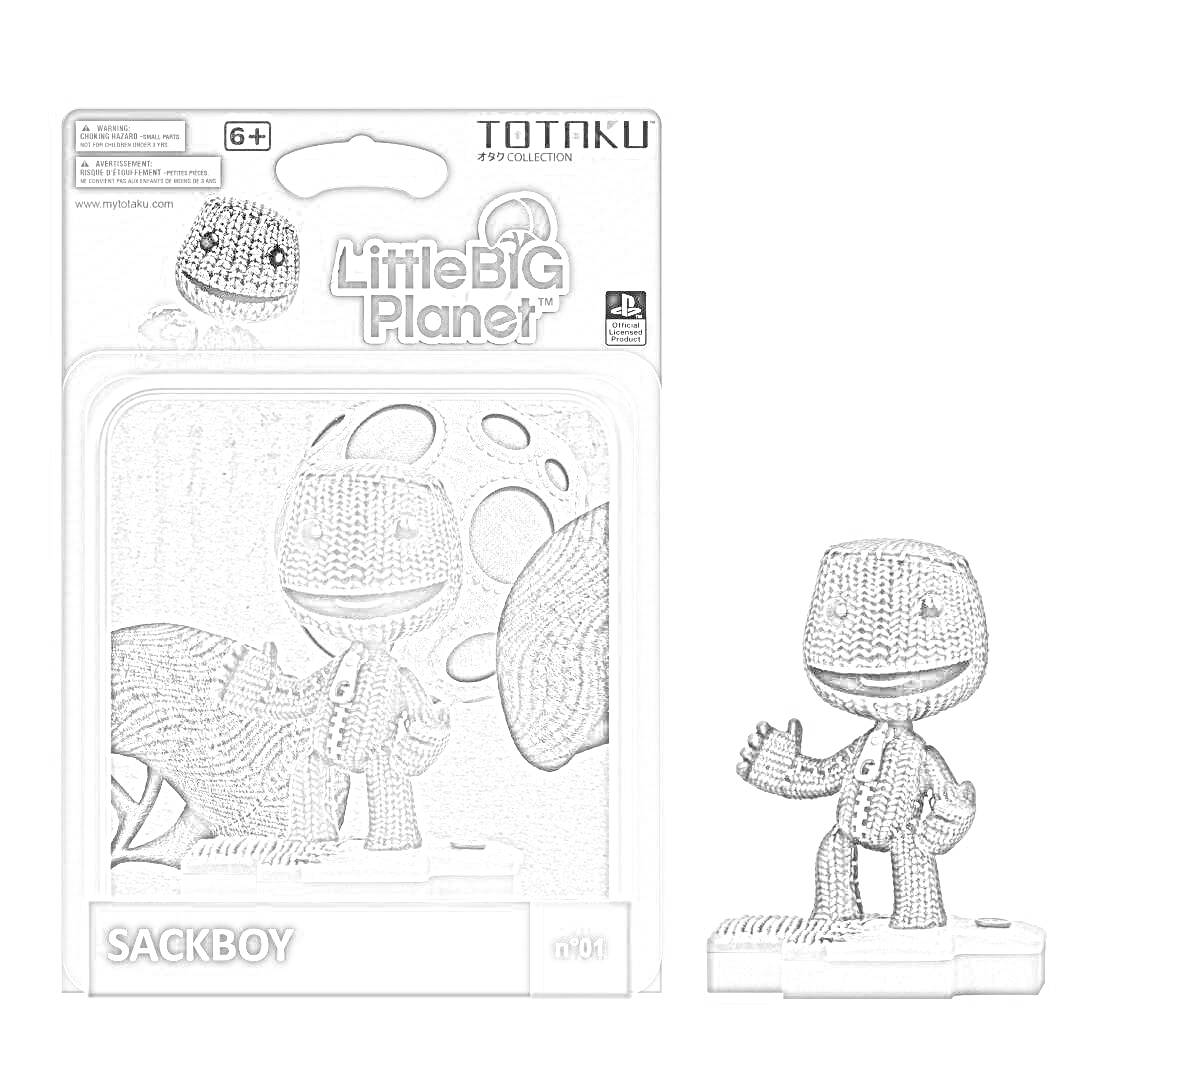 Раскраска Фигурка Сэкбоя в упаковке (LittleBigPlanet). В комплекте изображена фигурка Сэкбоя, упаковка с изображением Сэкбоя и логотипом LittleBigPlanet, а также номер 001.